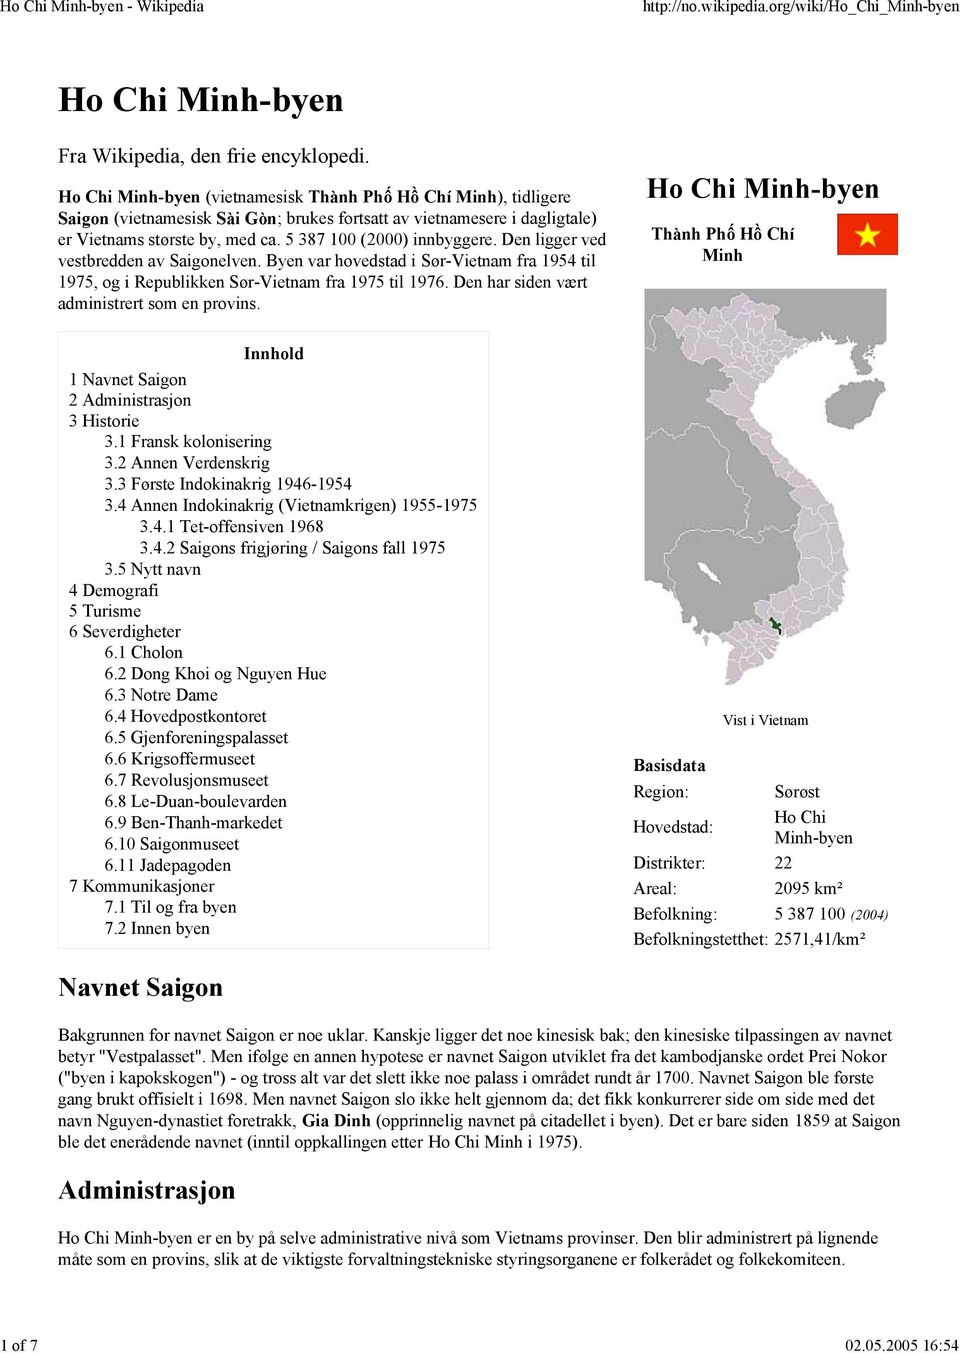 5 387 100 (2000) innbyggere. Den ligger ved vestbredden av Saigonelven. Byen var hovedstad i Sør-Vietnam fra 1954 til 1975, og i Republikken Sør-Vietnam fra 1975 til 1976.